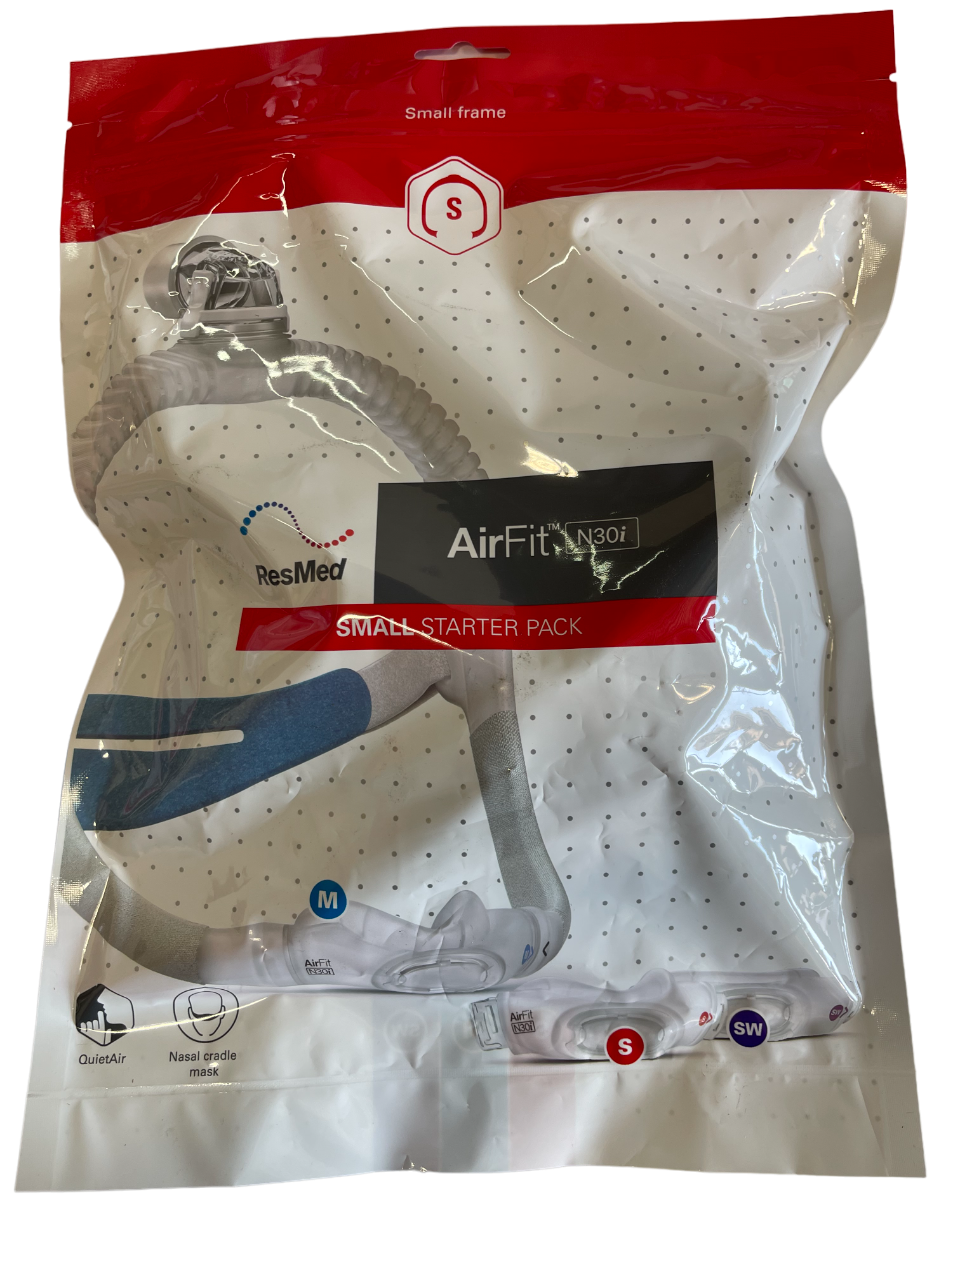 ResMed AirFit N30i Nasal CPAP Mask Kit